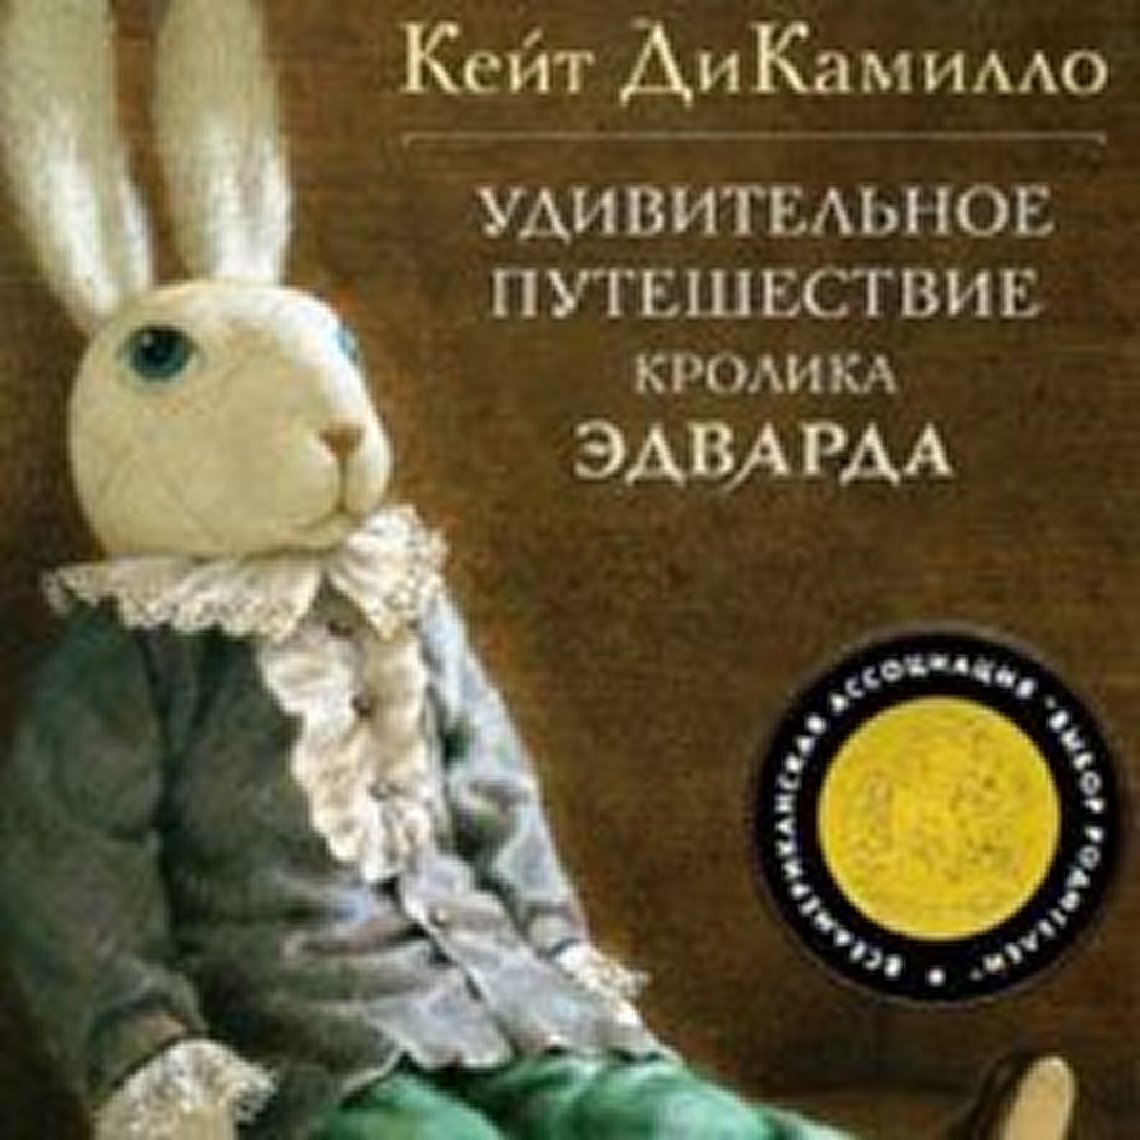 Кролик Эдвард Кейт ДИКАМИЛЛО